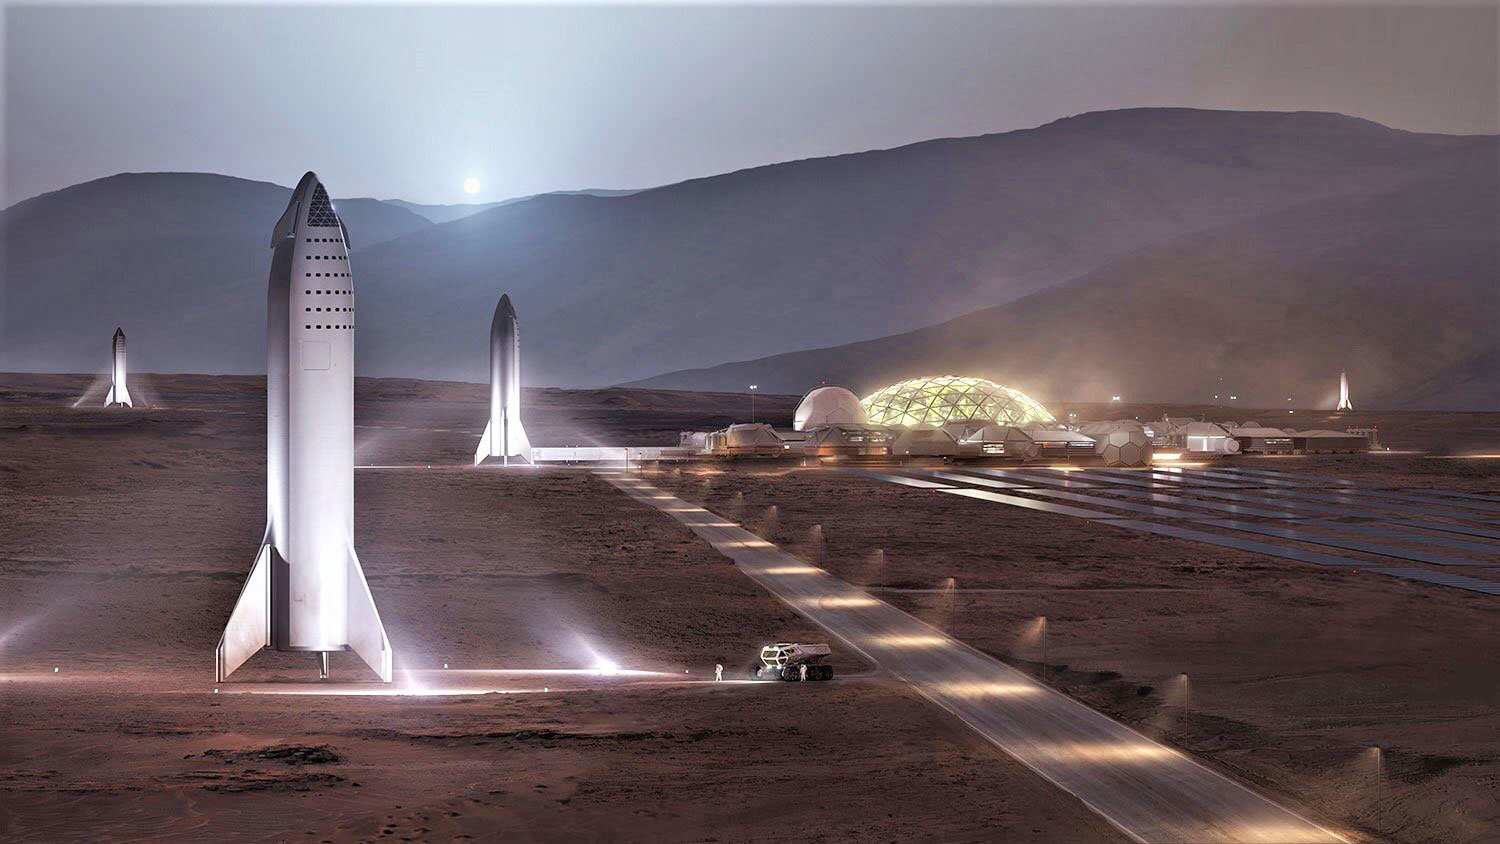 Αυτή είναι η βάση στον πλανήτη Άρη που οραματίζεται ο Elon Musk και η SpaceX